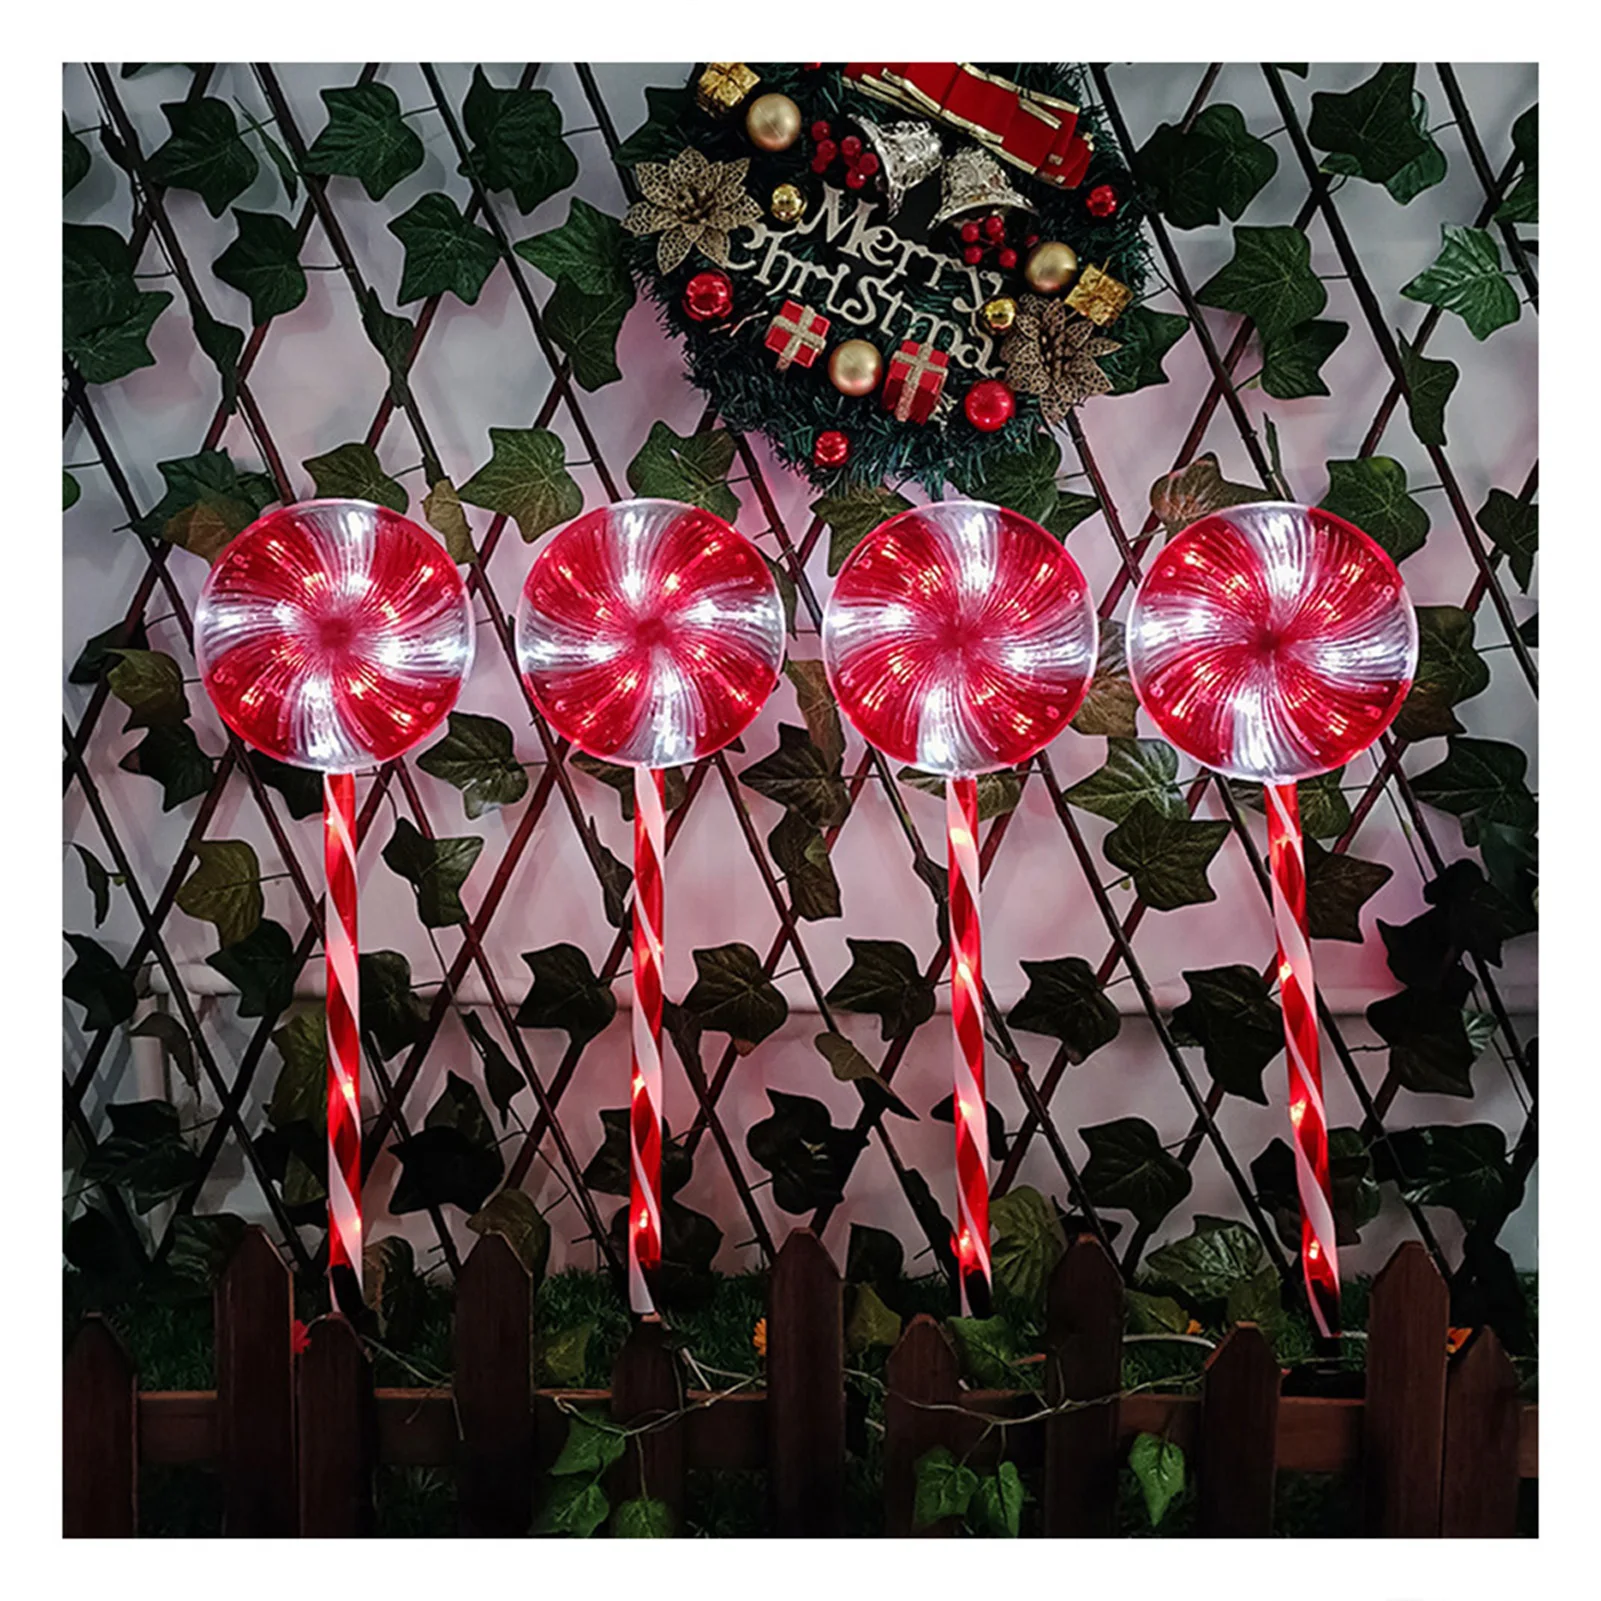 

Набор из 4 светильников на колышке леденцов, перечная мята, 8 режимов, украшения для праздника, Рождества, внутреннего дворика